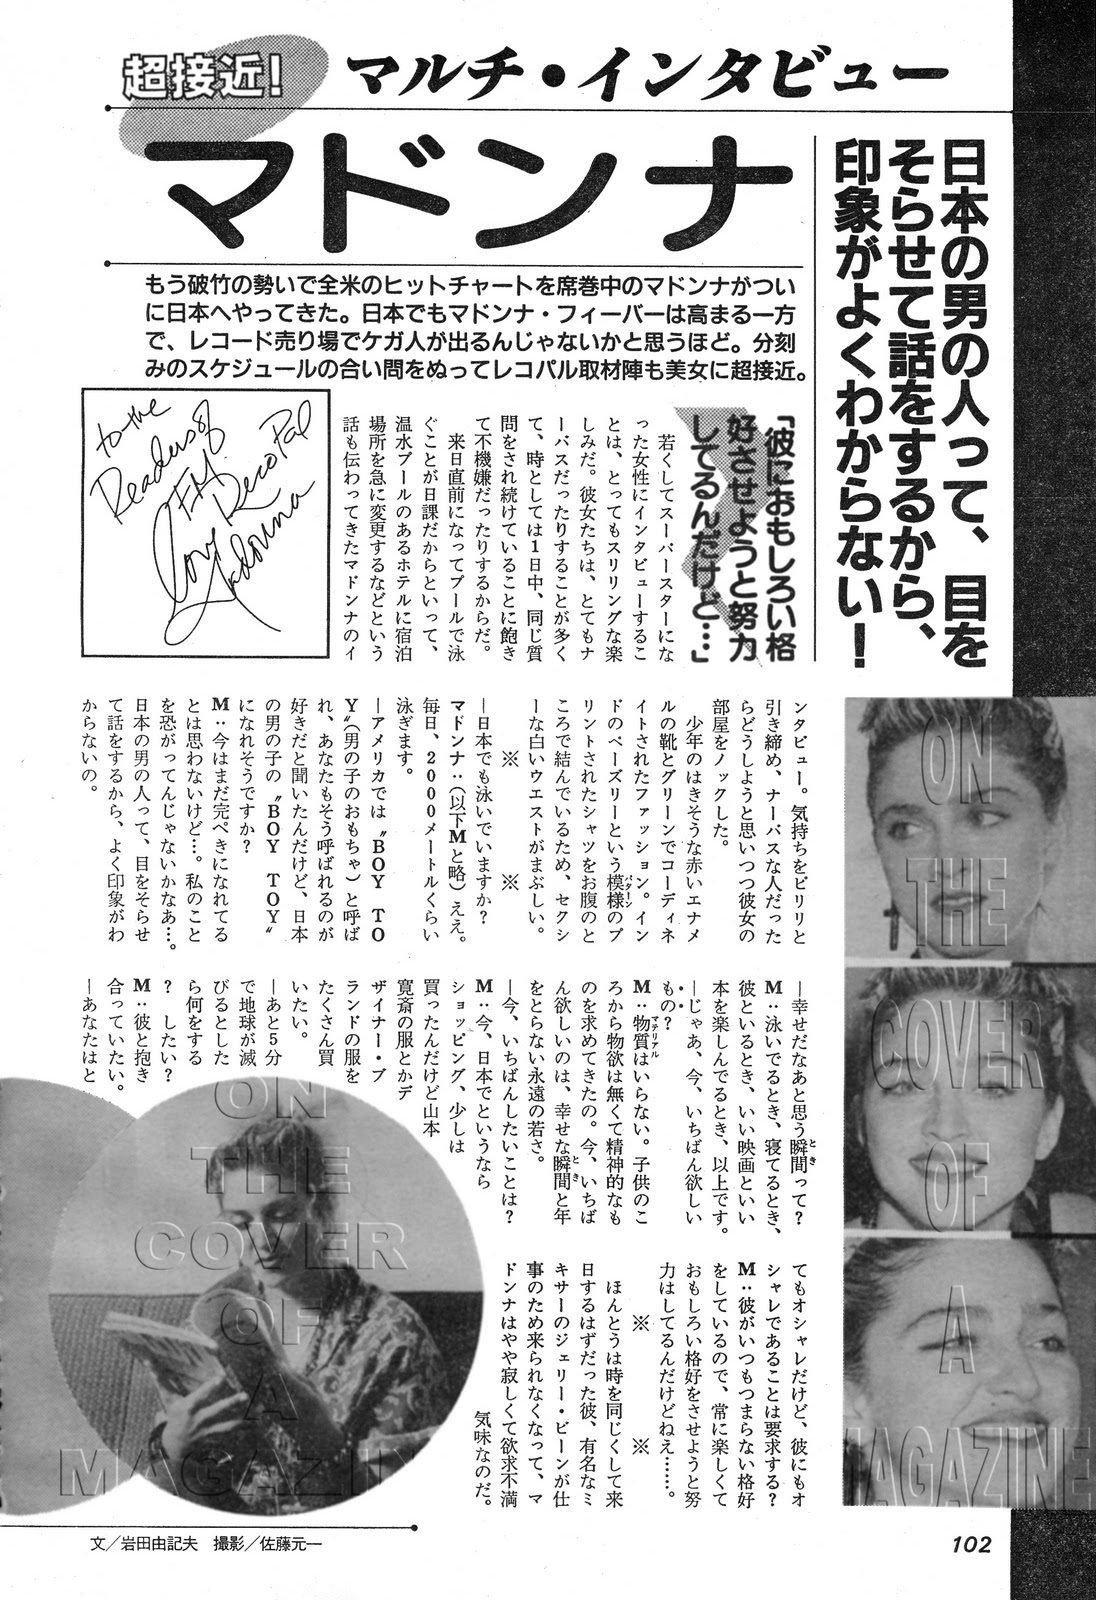 http://2.bp.blogspot.com/_eA7ZafYKvfU/TP6_kbogfyI/AAAAAAAAEWY/sy2MN5yX2Vg/s1600/FM+Recopal+Japan+February+11-24+1985+page+102+copy.jpg